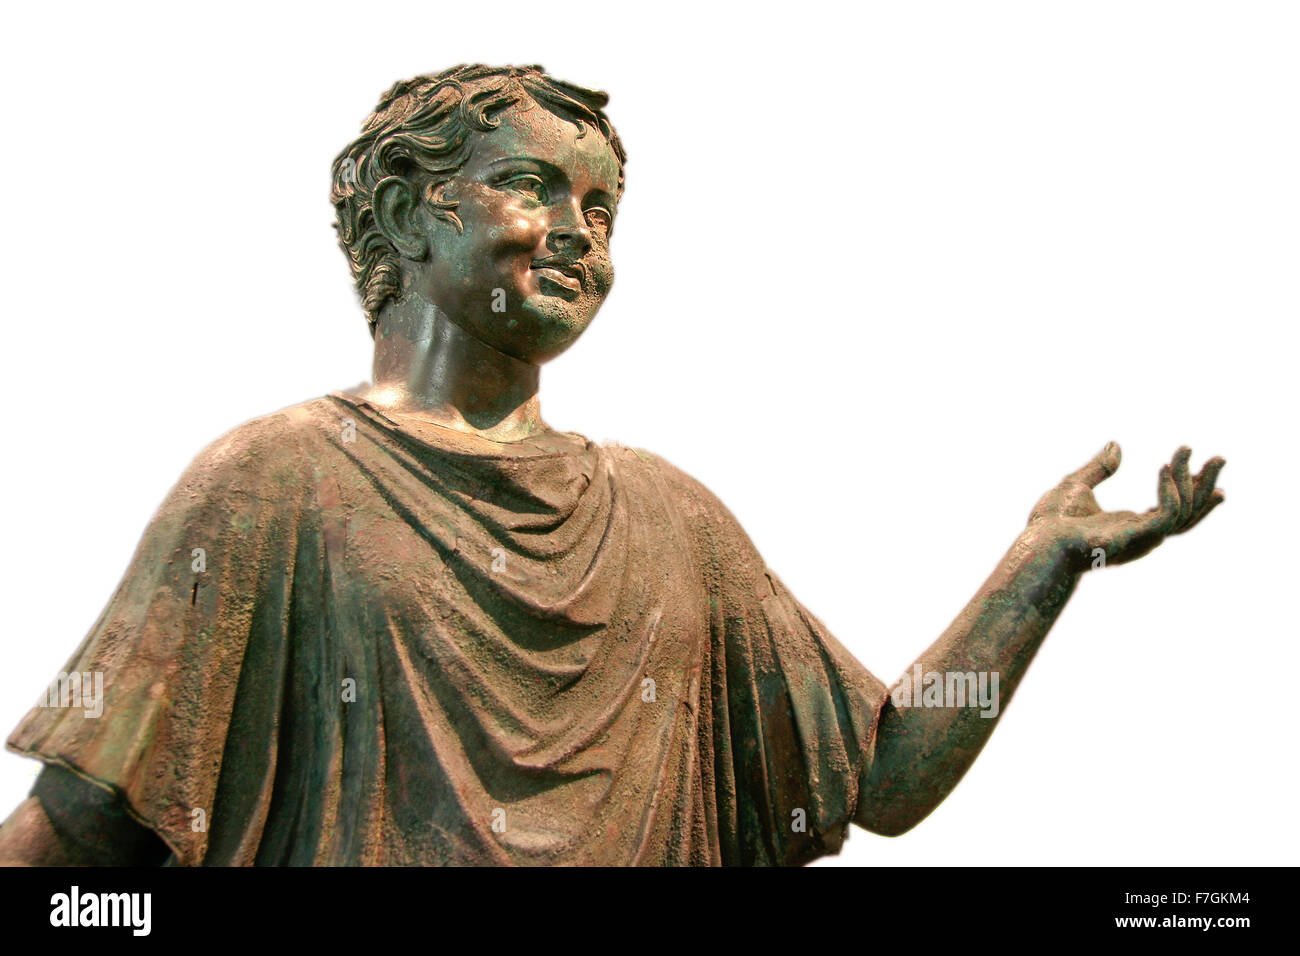 Kleine Bronze-Statue Bull, alte römische Kunst, isoliert auf weißem Hintergrund Stockfoto